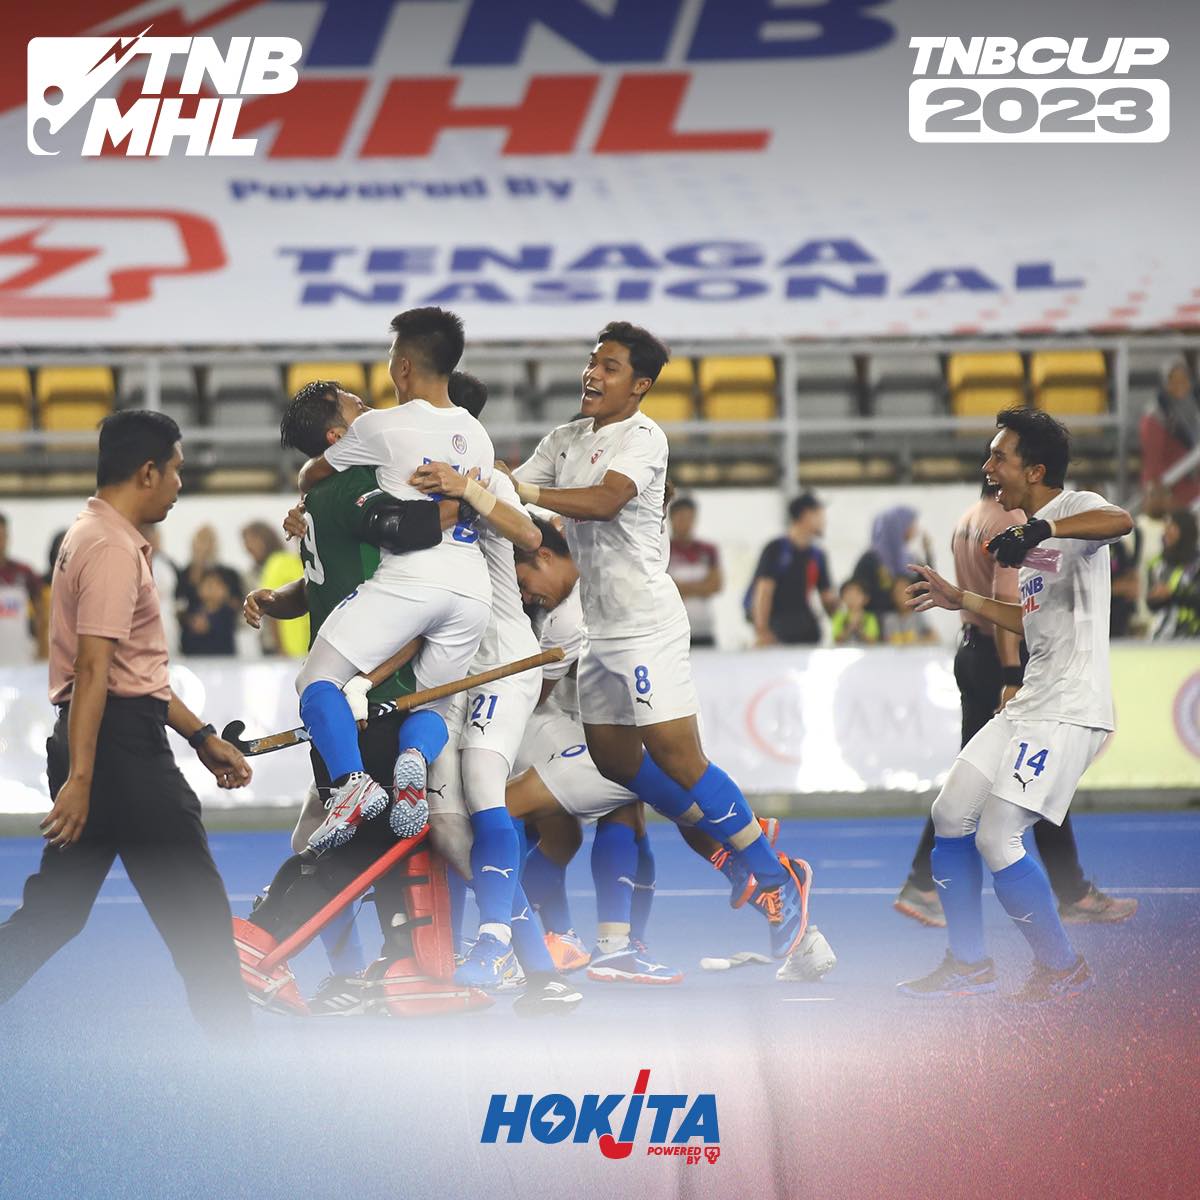 TNB pamerkan kebangkitan dramatik, THT gah mara ke final Piala TNB 2023